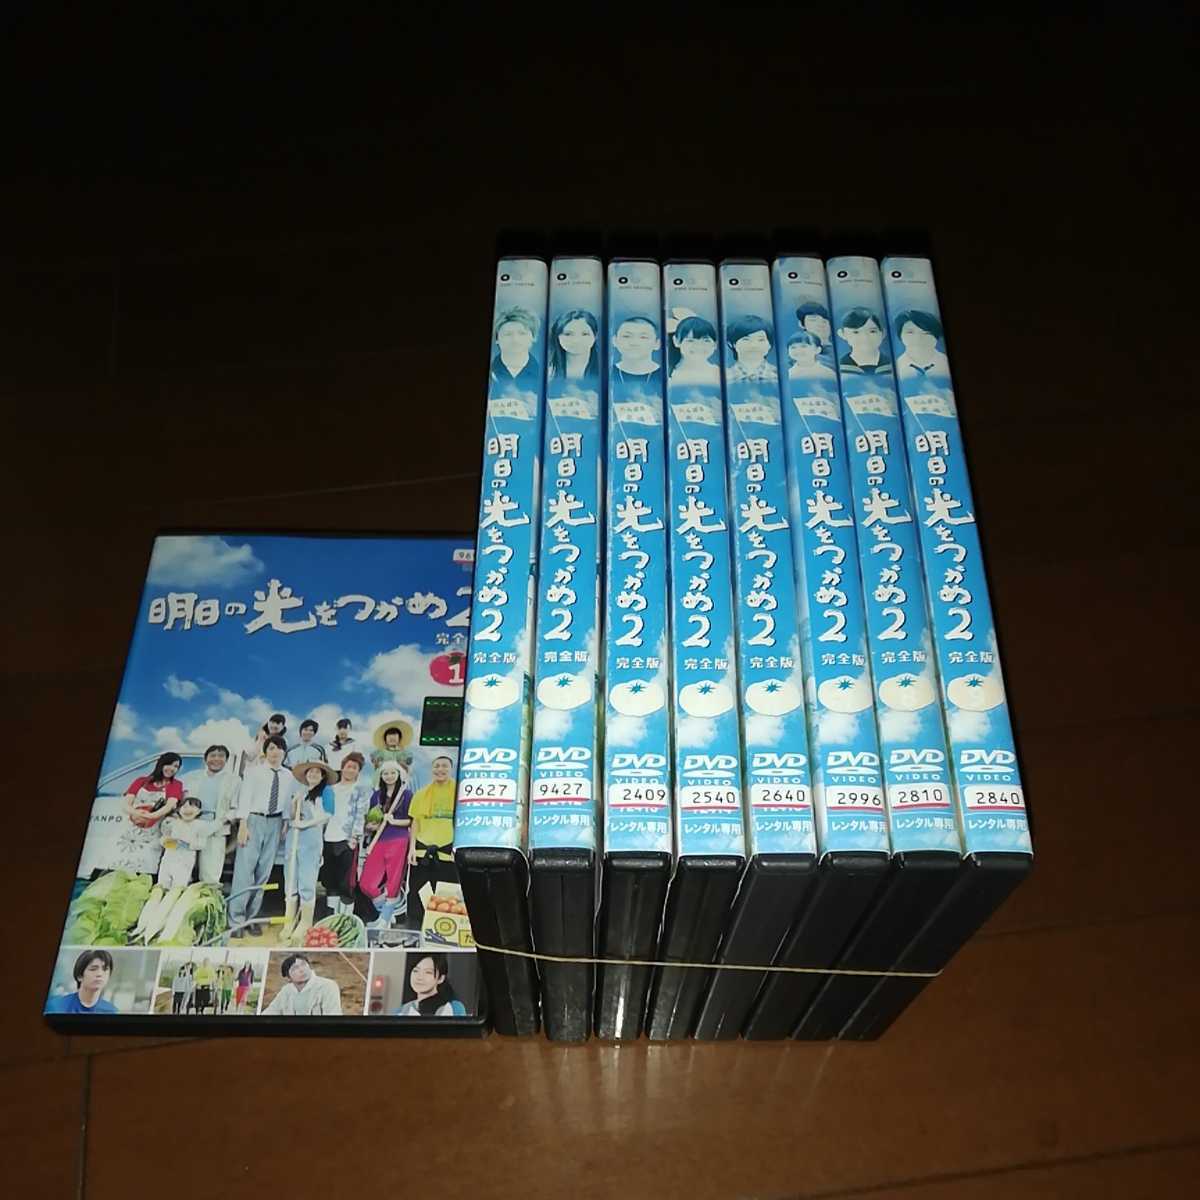 最先端 明日の光をつかめDVD-BOX 1.2.3 TVドラマ - www.huberwinery.com